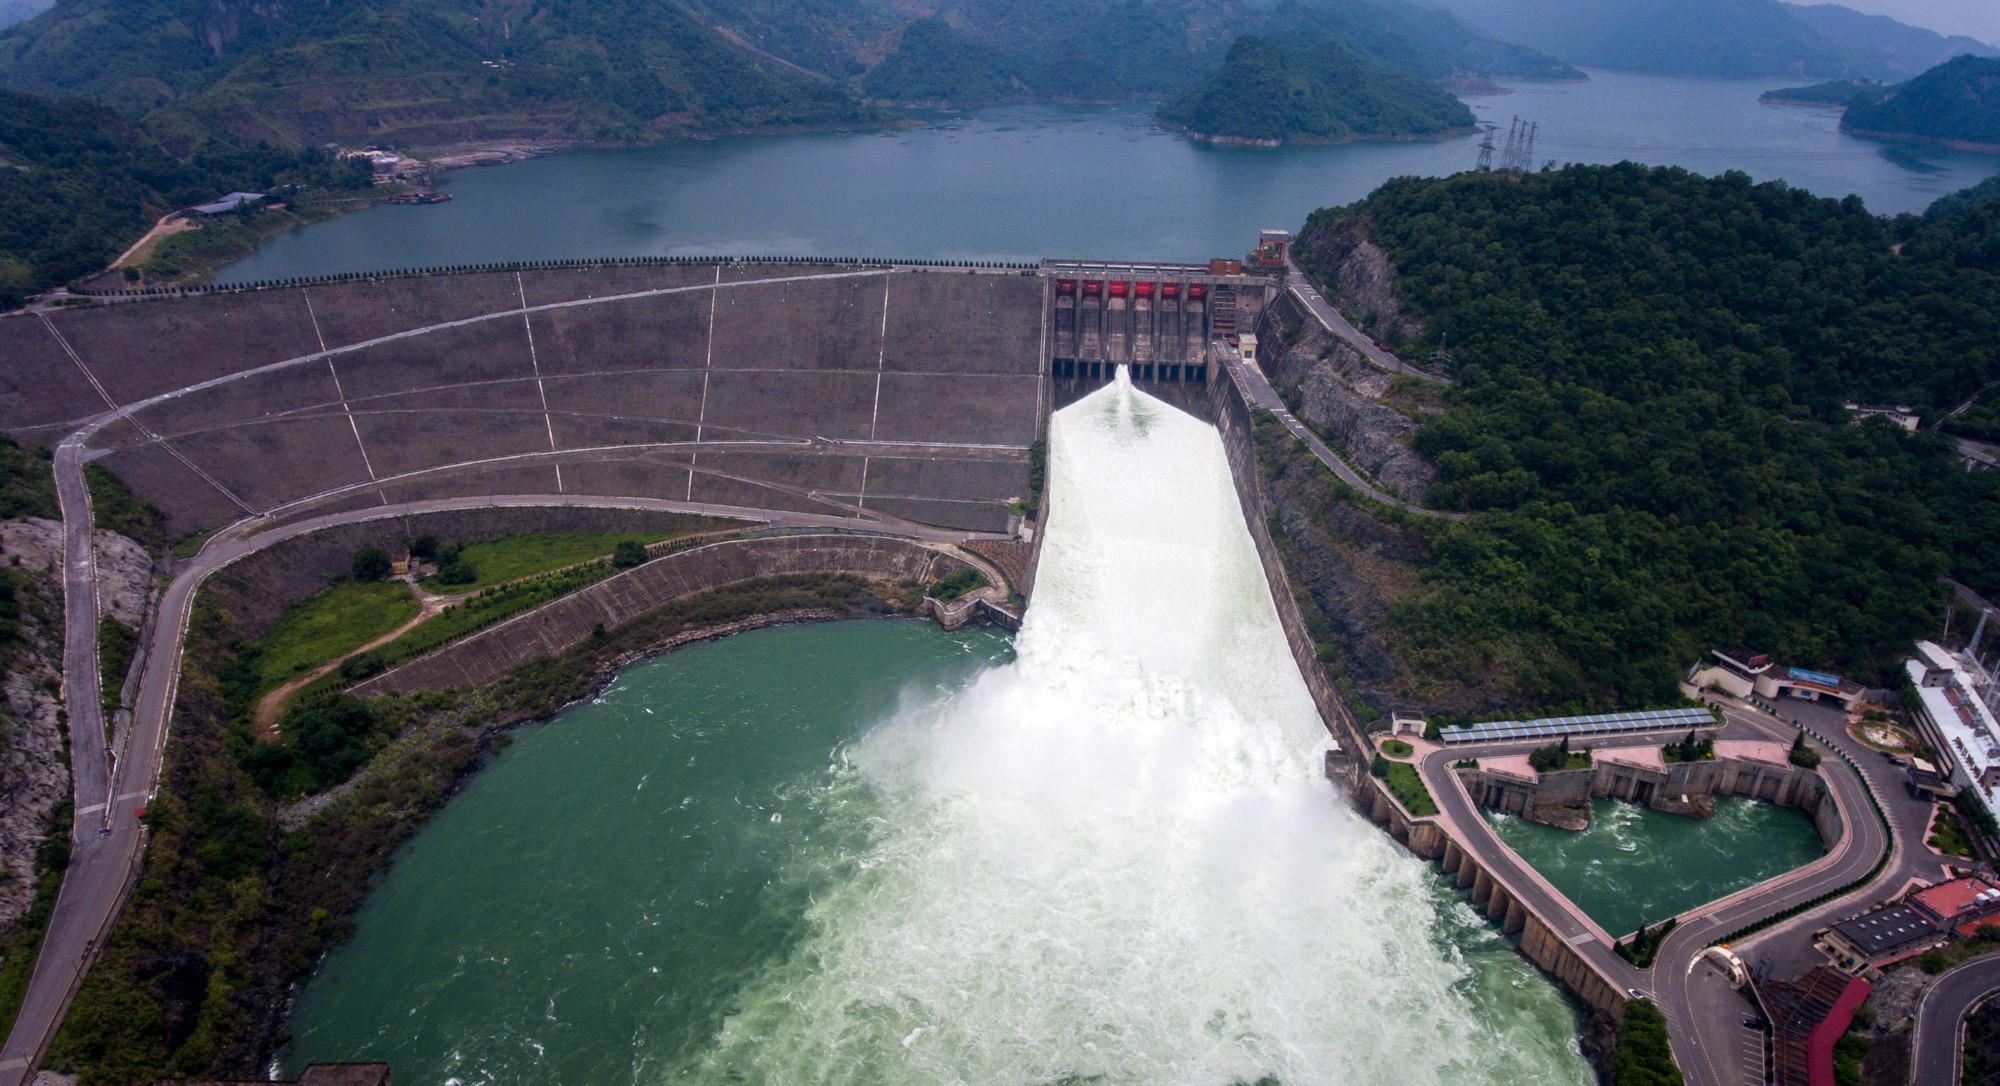 Hồ thủy điện Lai Châu đã gần chạm mực nước dâng bình thường, trong khi Sơn La và Hòa Bình đã sát mực nước trước lũ